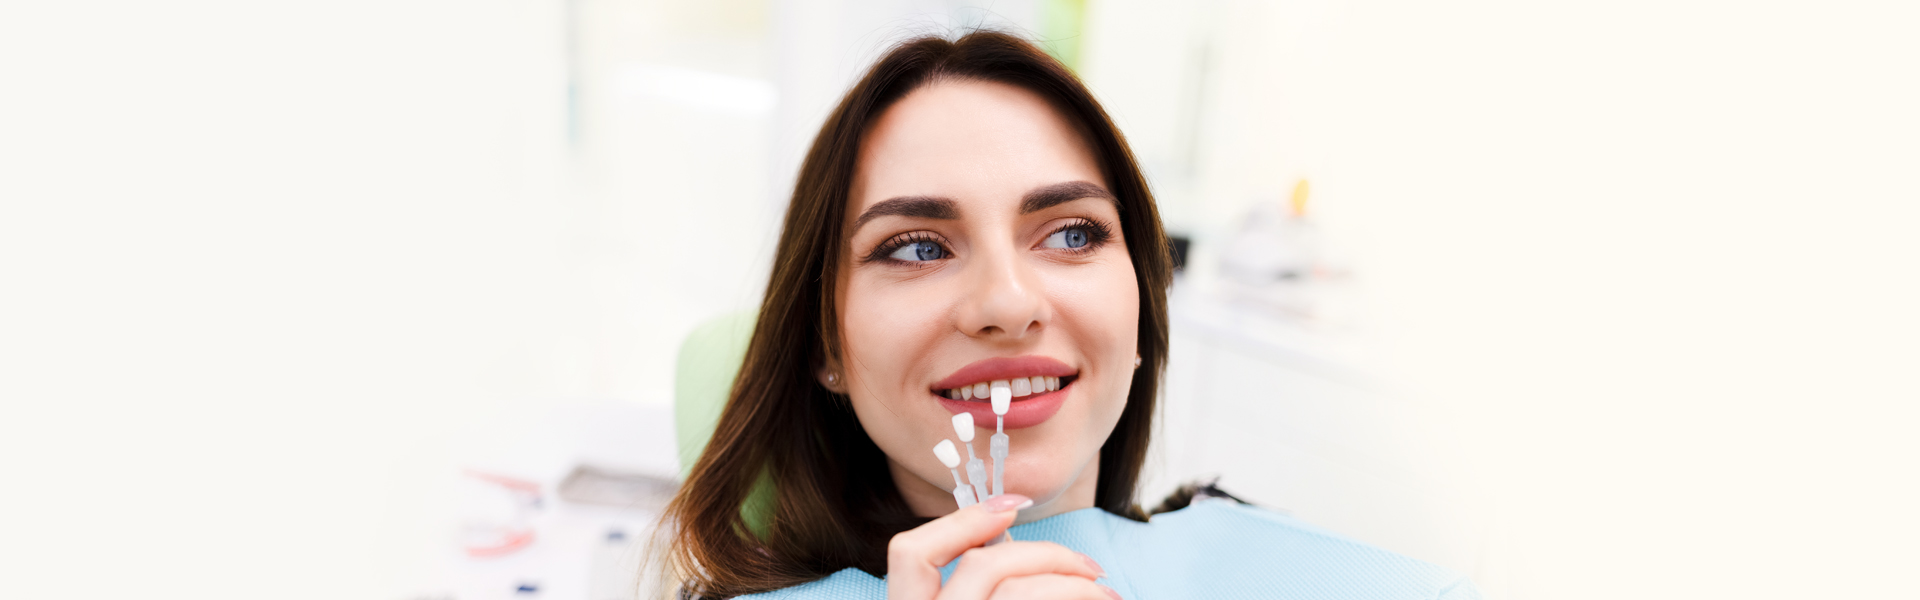 Guide on Choosing Dental Veneers Shape and Shade